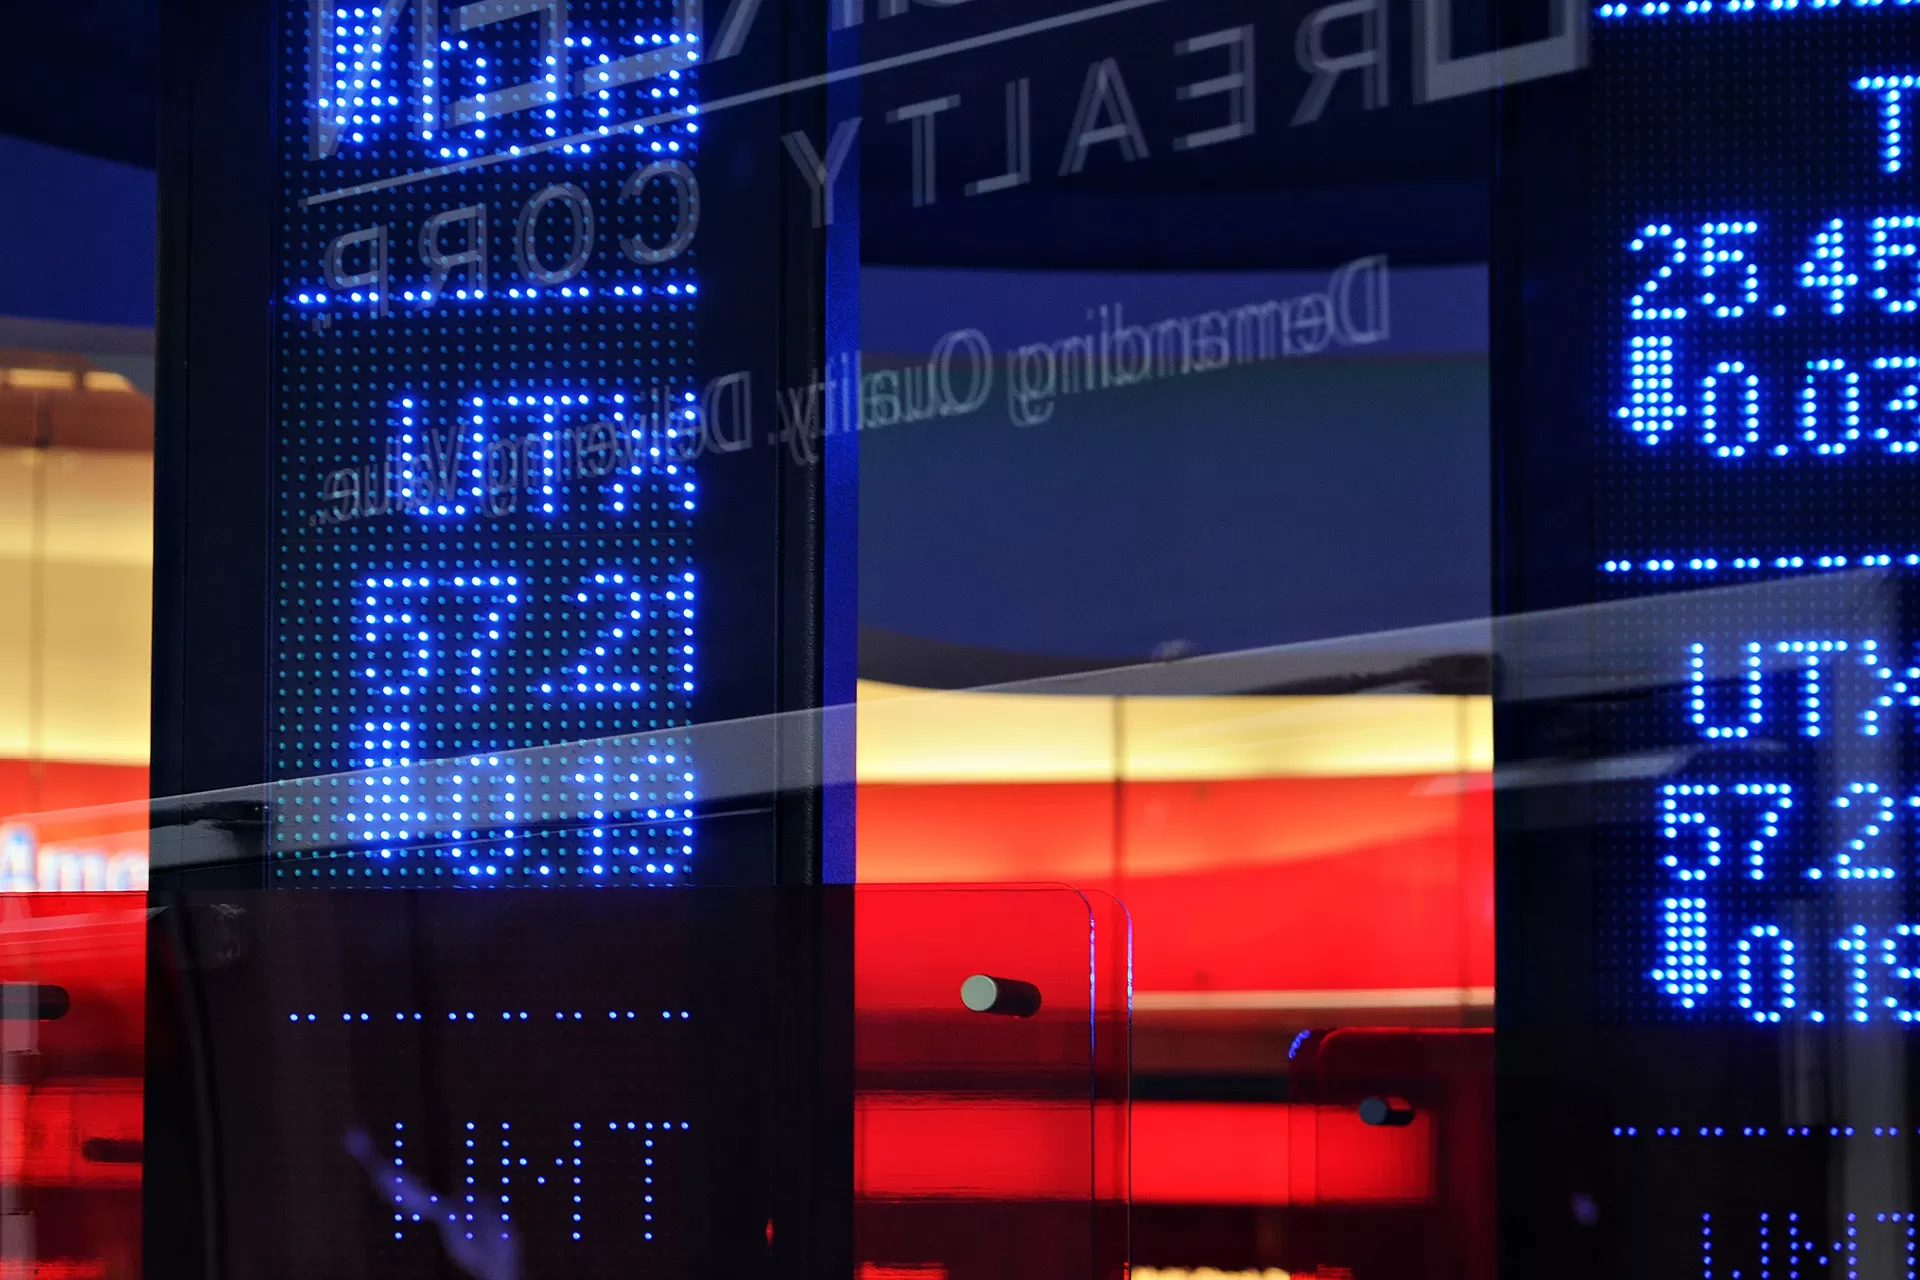 Die Börsenkurse werden auf Displays im Fenster einer Bank angezeigt.